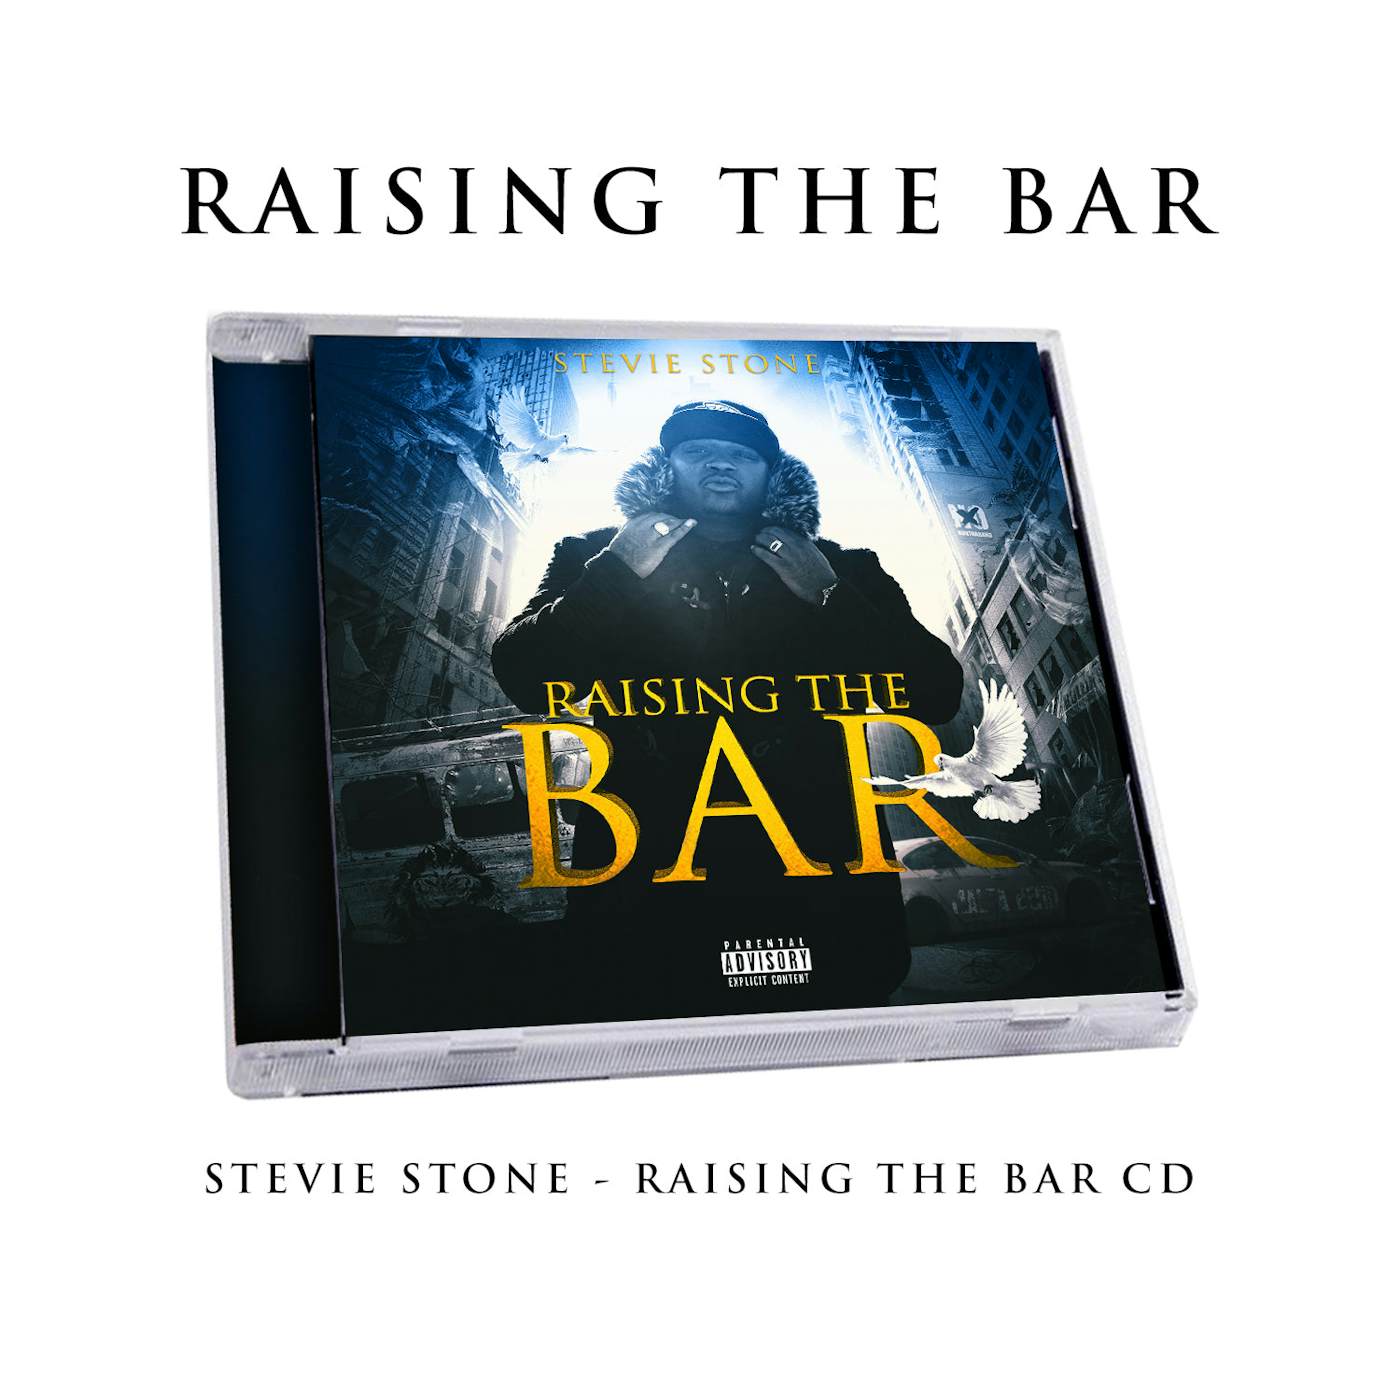 Stevie Stone "Raising the Bar" CD